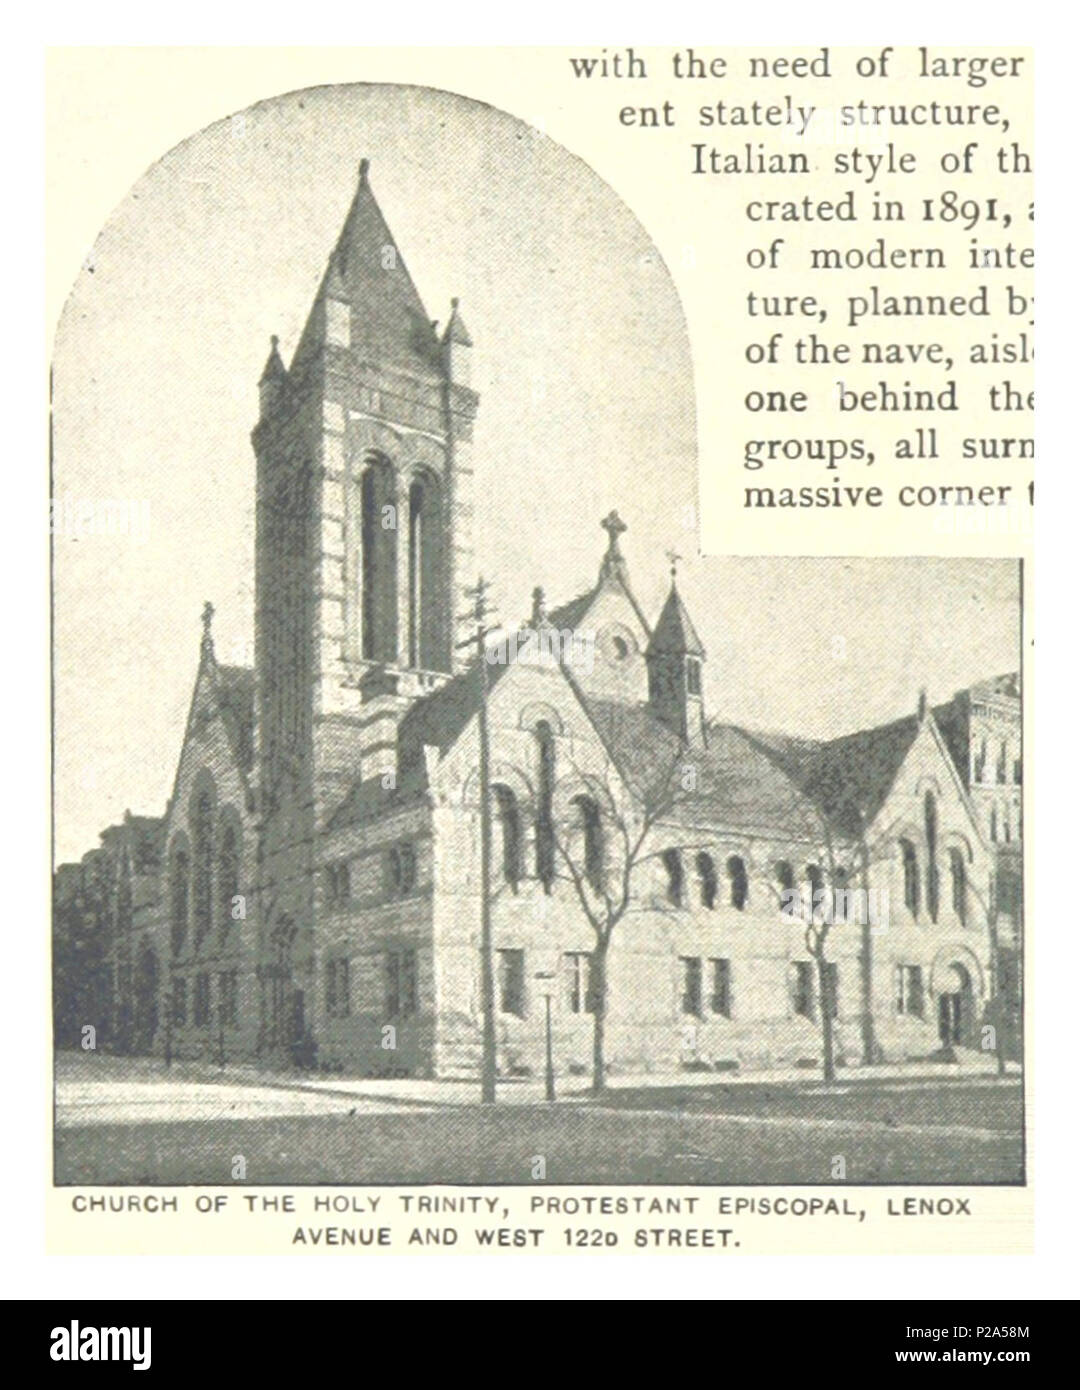 (König 1893, NYC) pg 368 KIRCHE DER HEILIGEN DREIFALTIGKEIT, protestantischen Episkopalen, LENOX AVENUE UND WEST 122 D STREET. Stockfoto